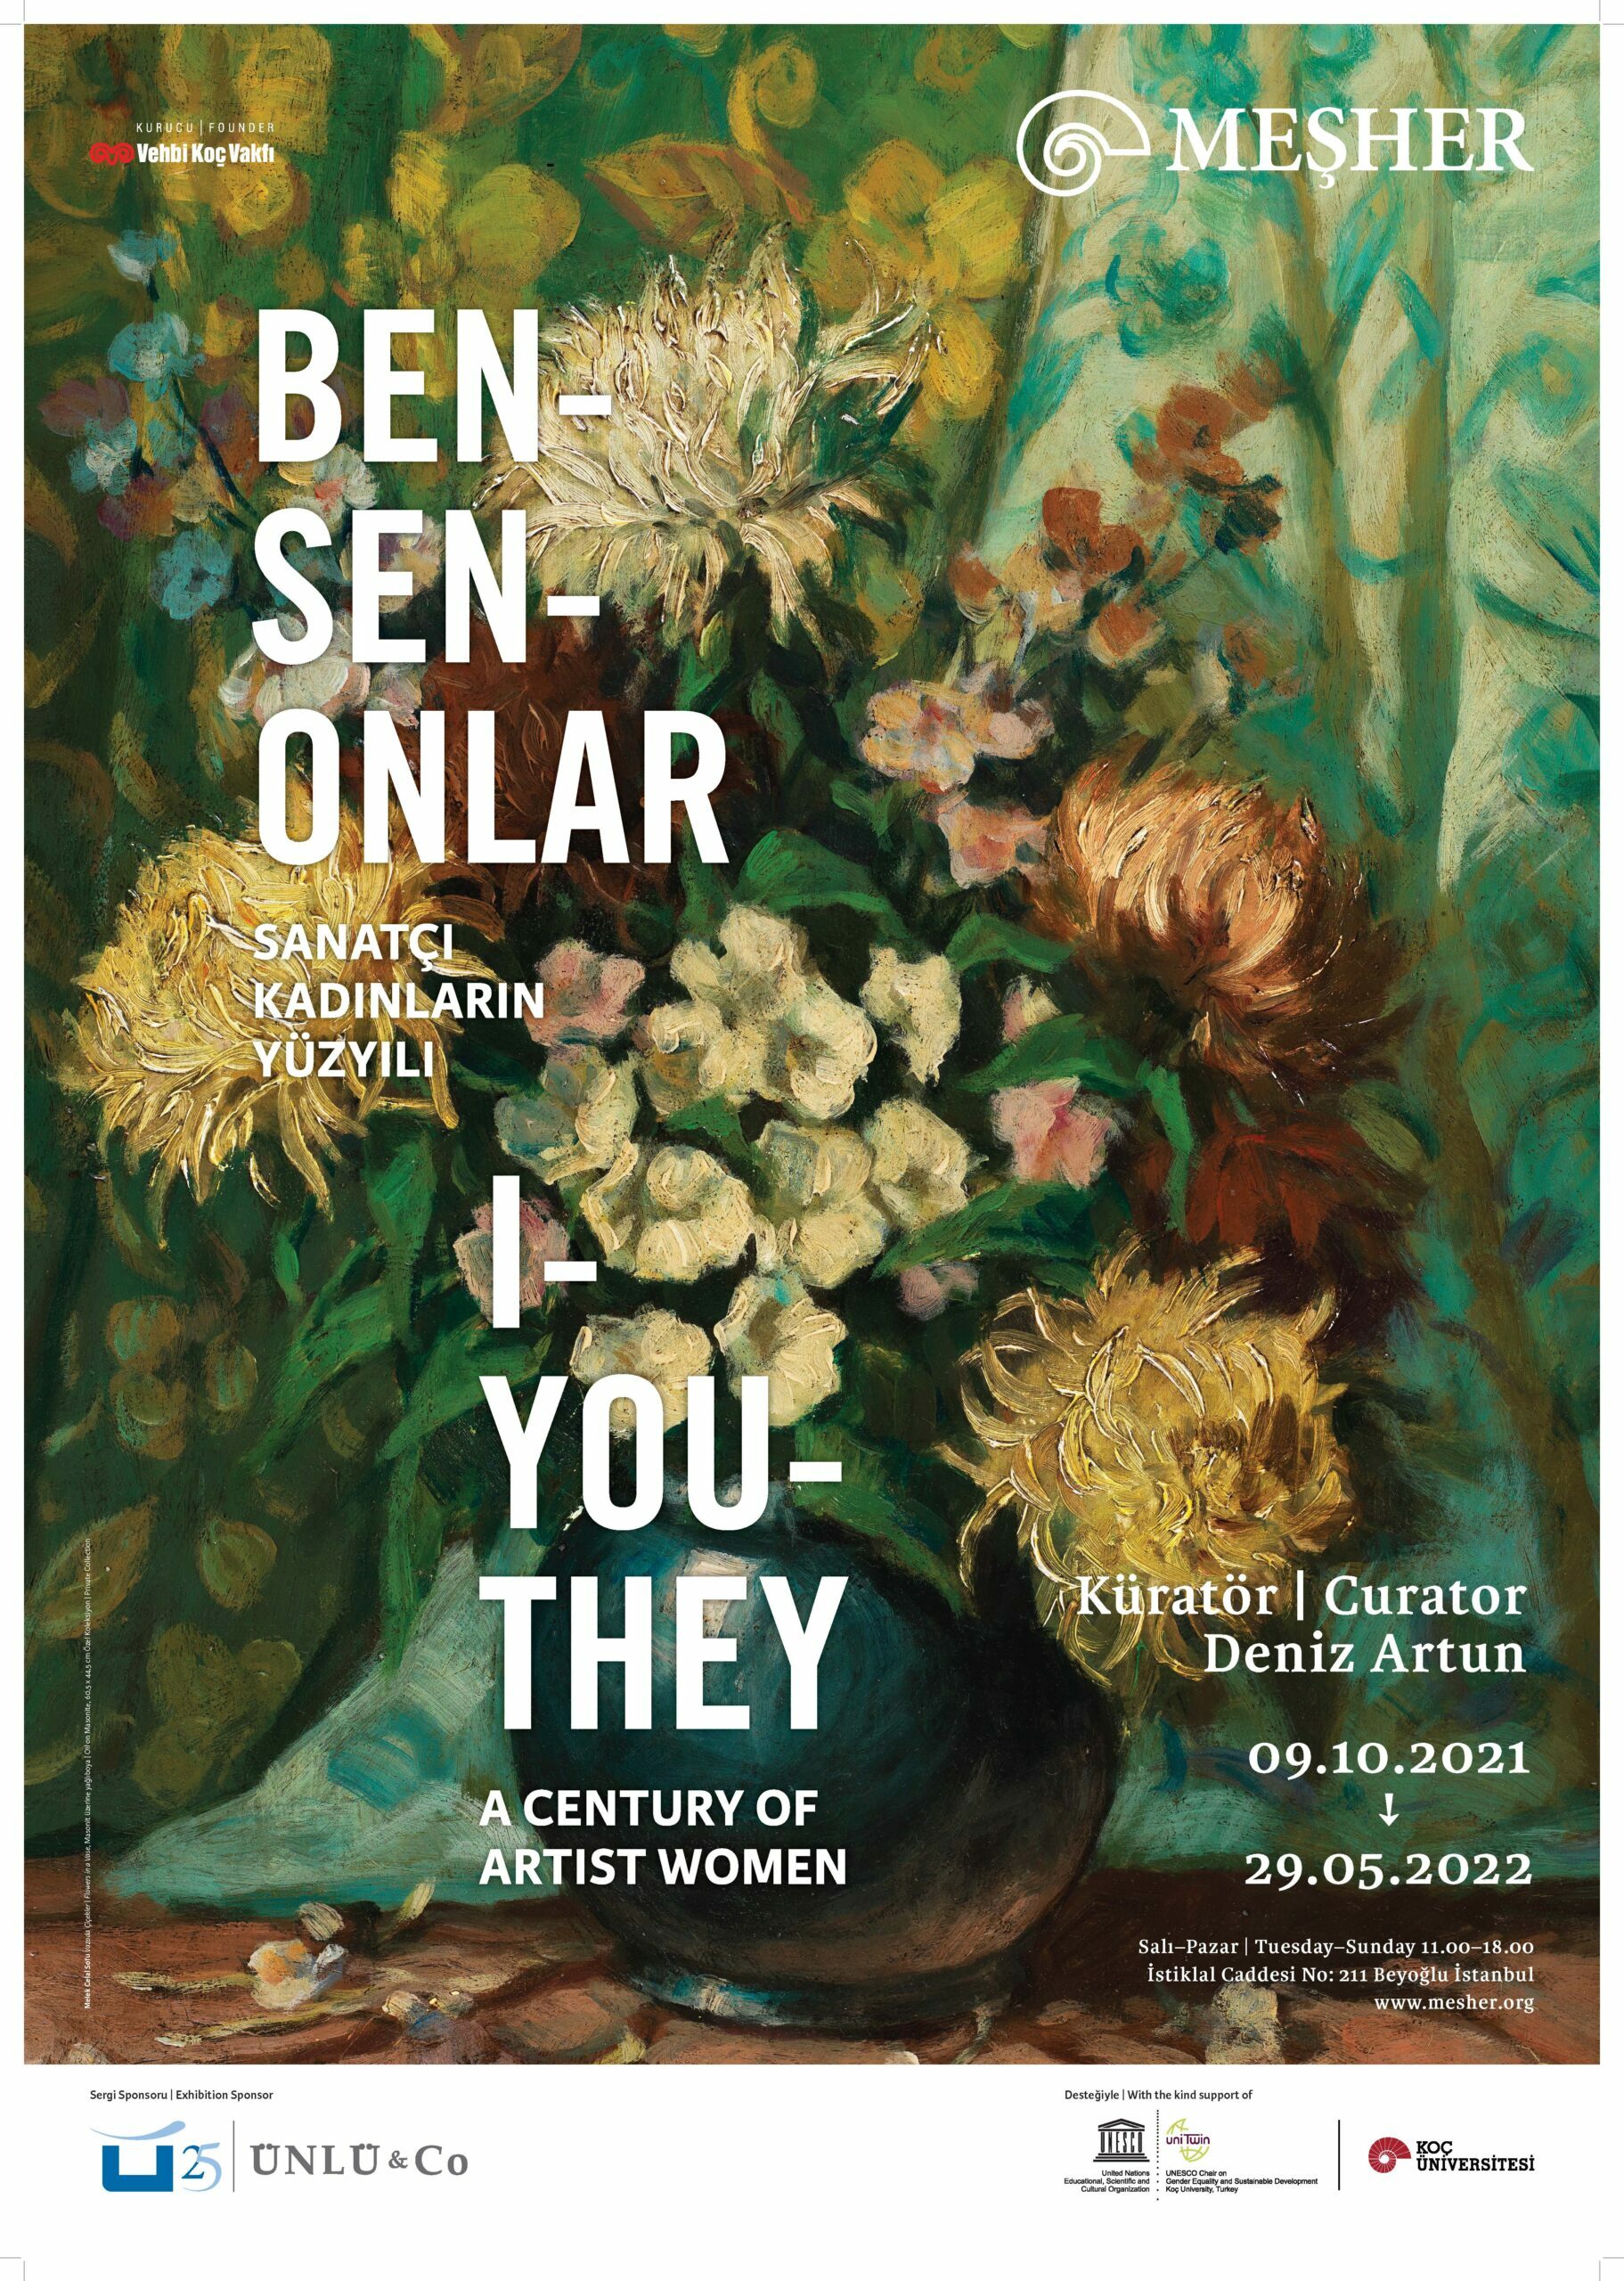  Ben-Sen-Onlar: Sanatçı Kadınların Yüzyılı sergisi 29 Mayıs’a uzatıldı